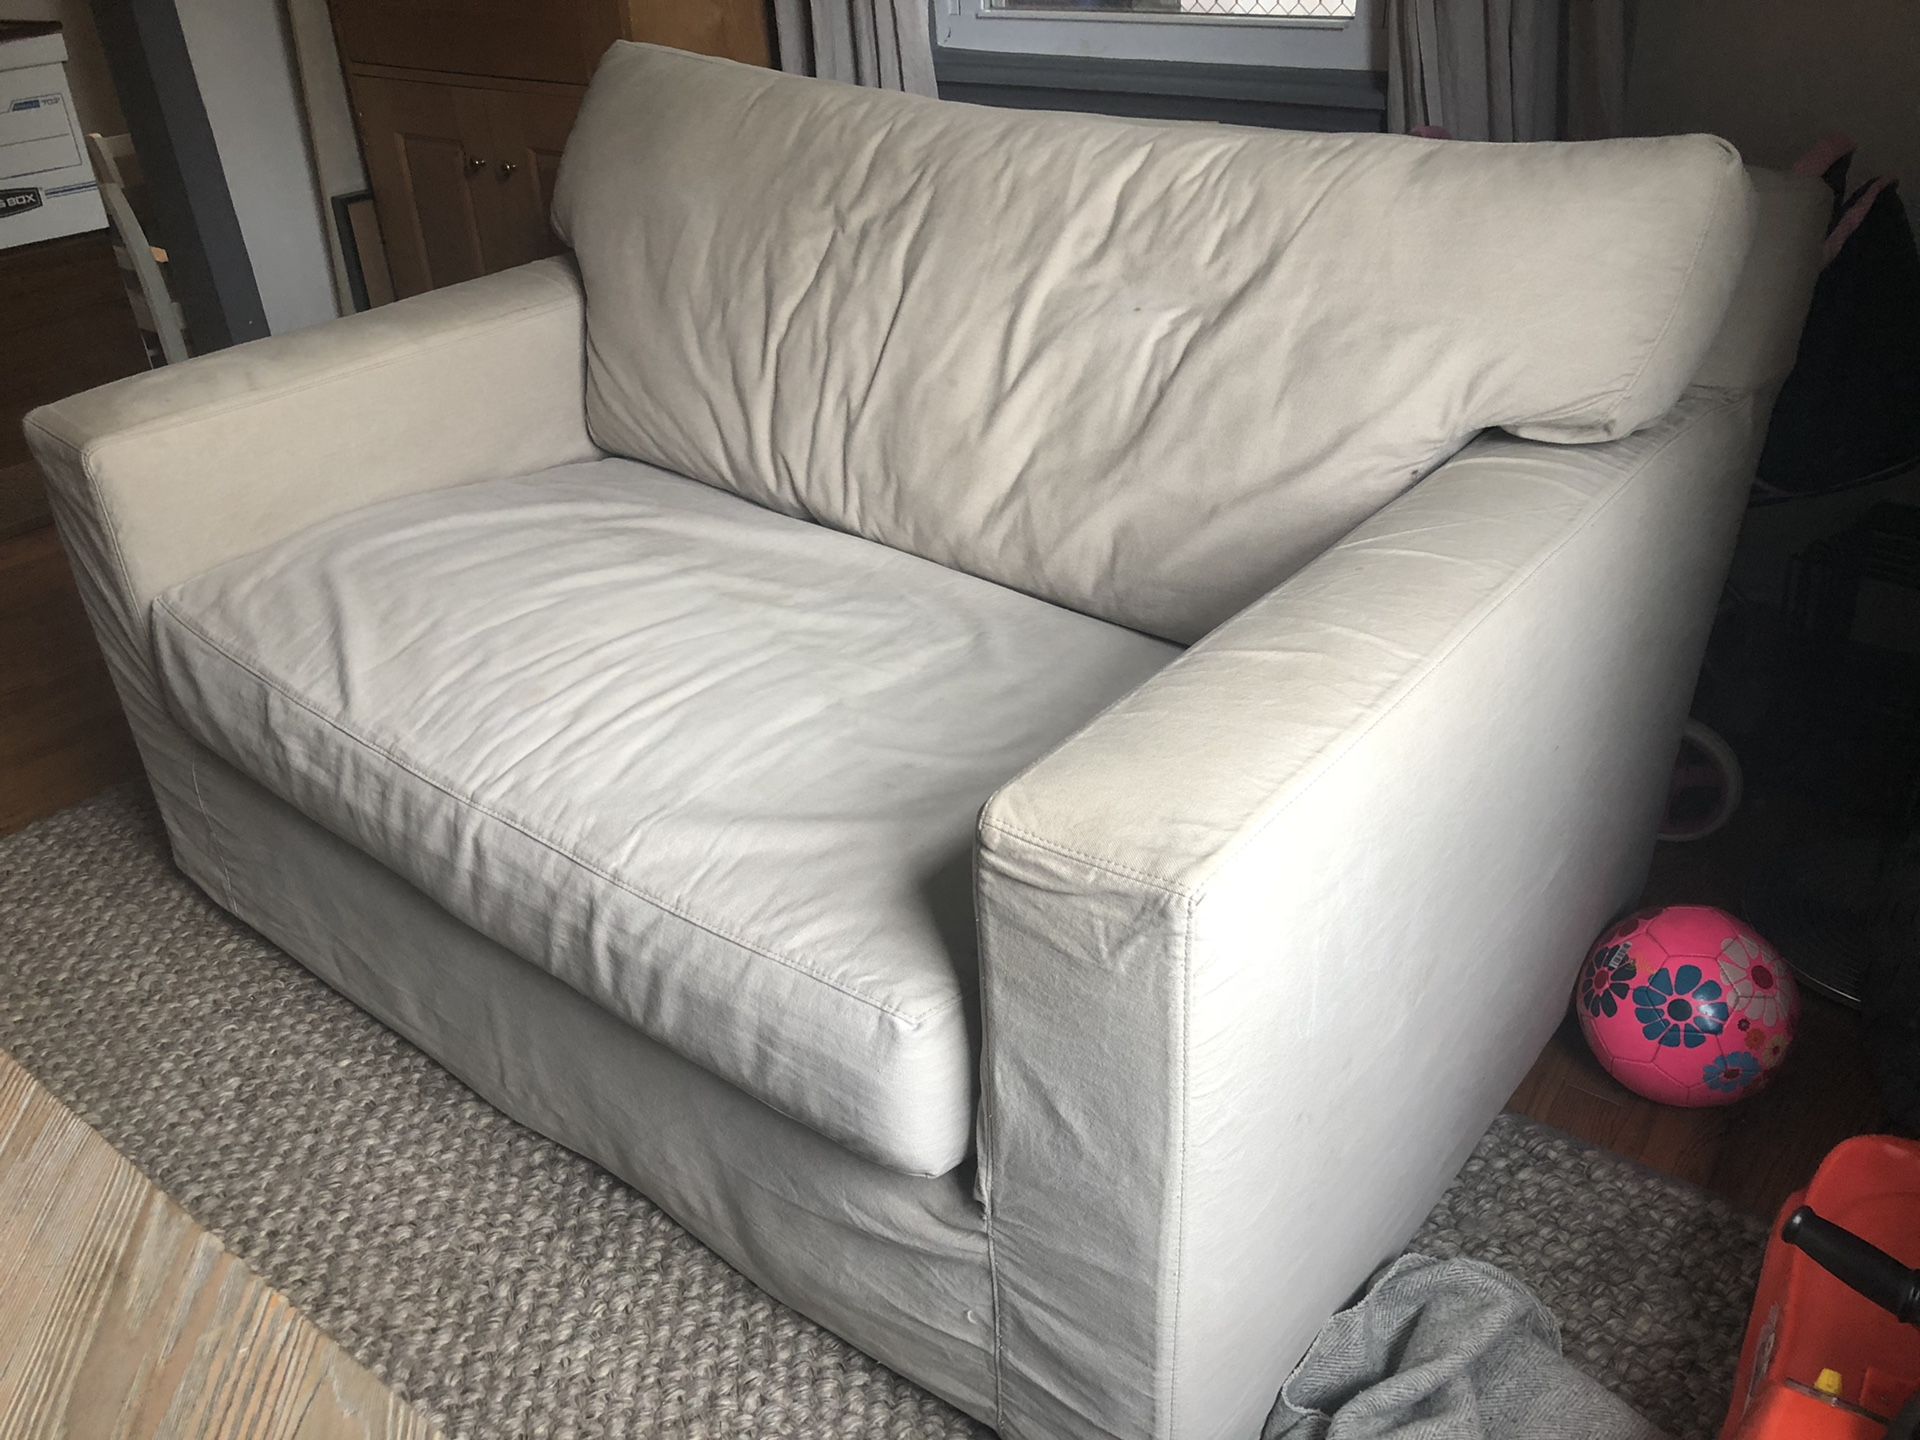 Axis II Crate & Barrel sleeper sofa couch